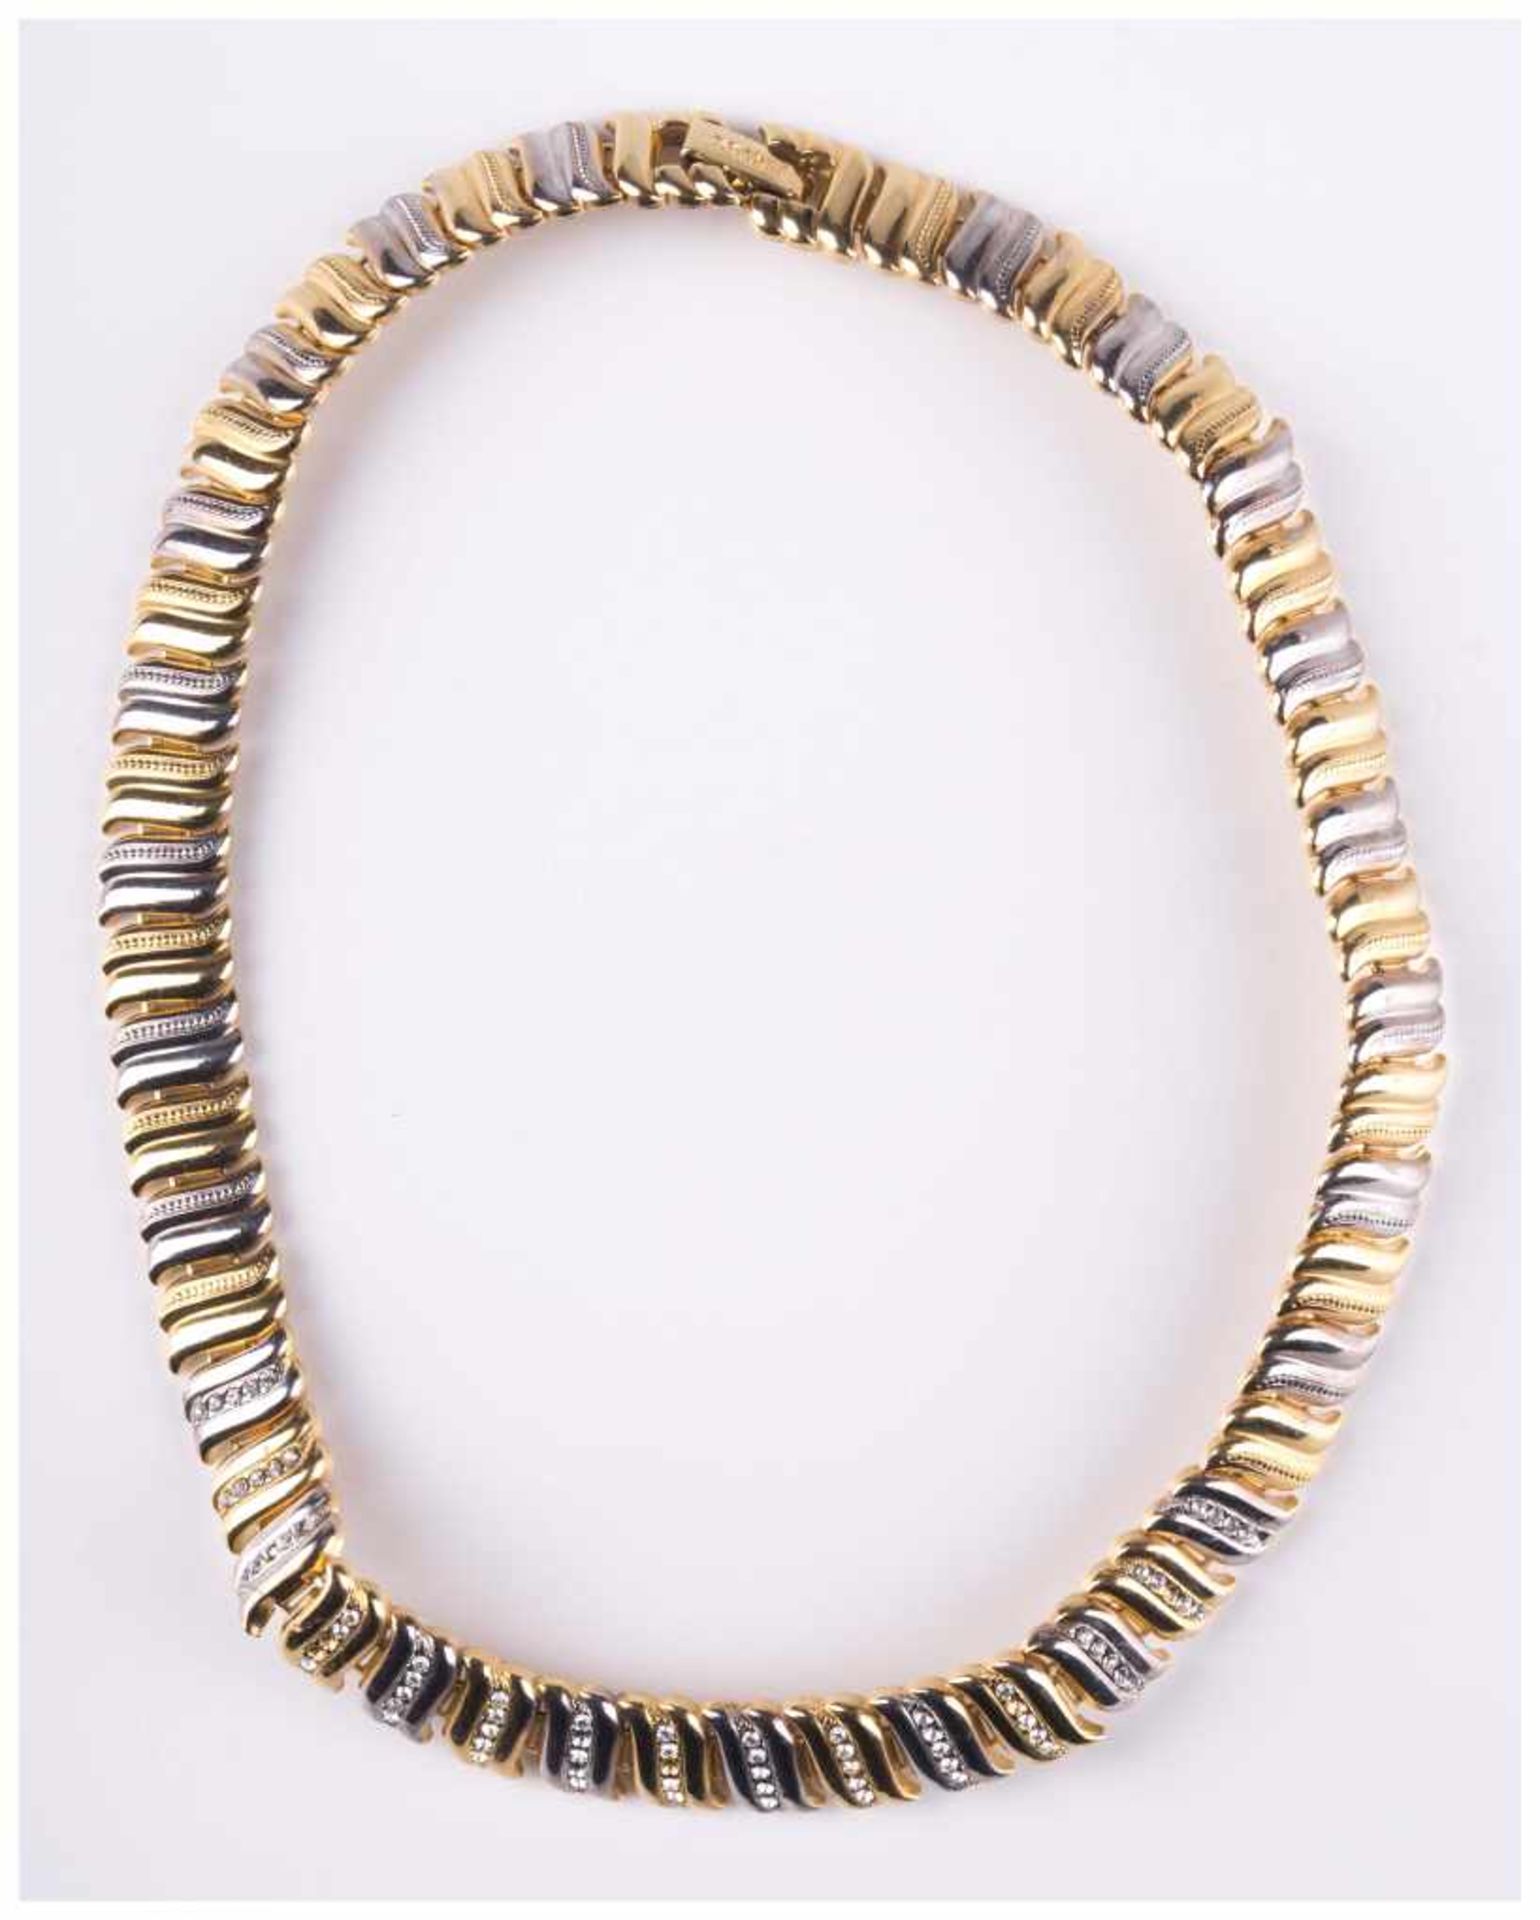 Modeschmuck Collier / Costume jewellery necklace - Vergoldung in Bicolor, mit [...]